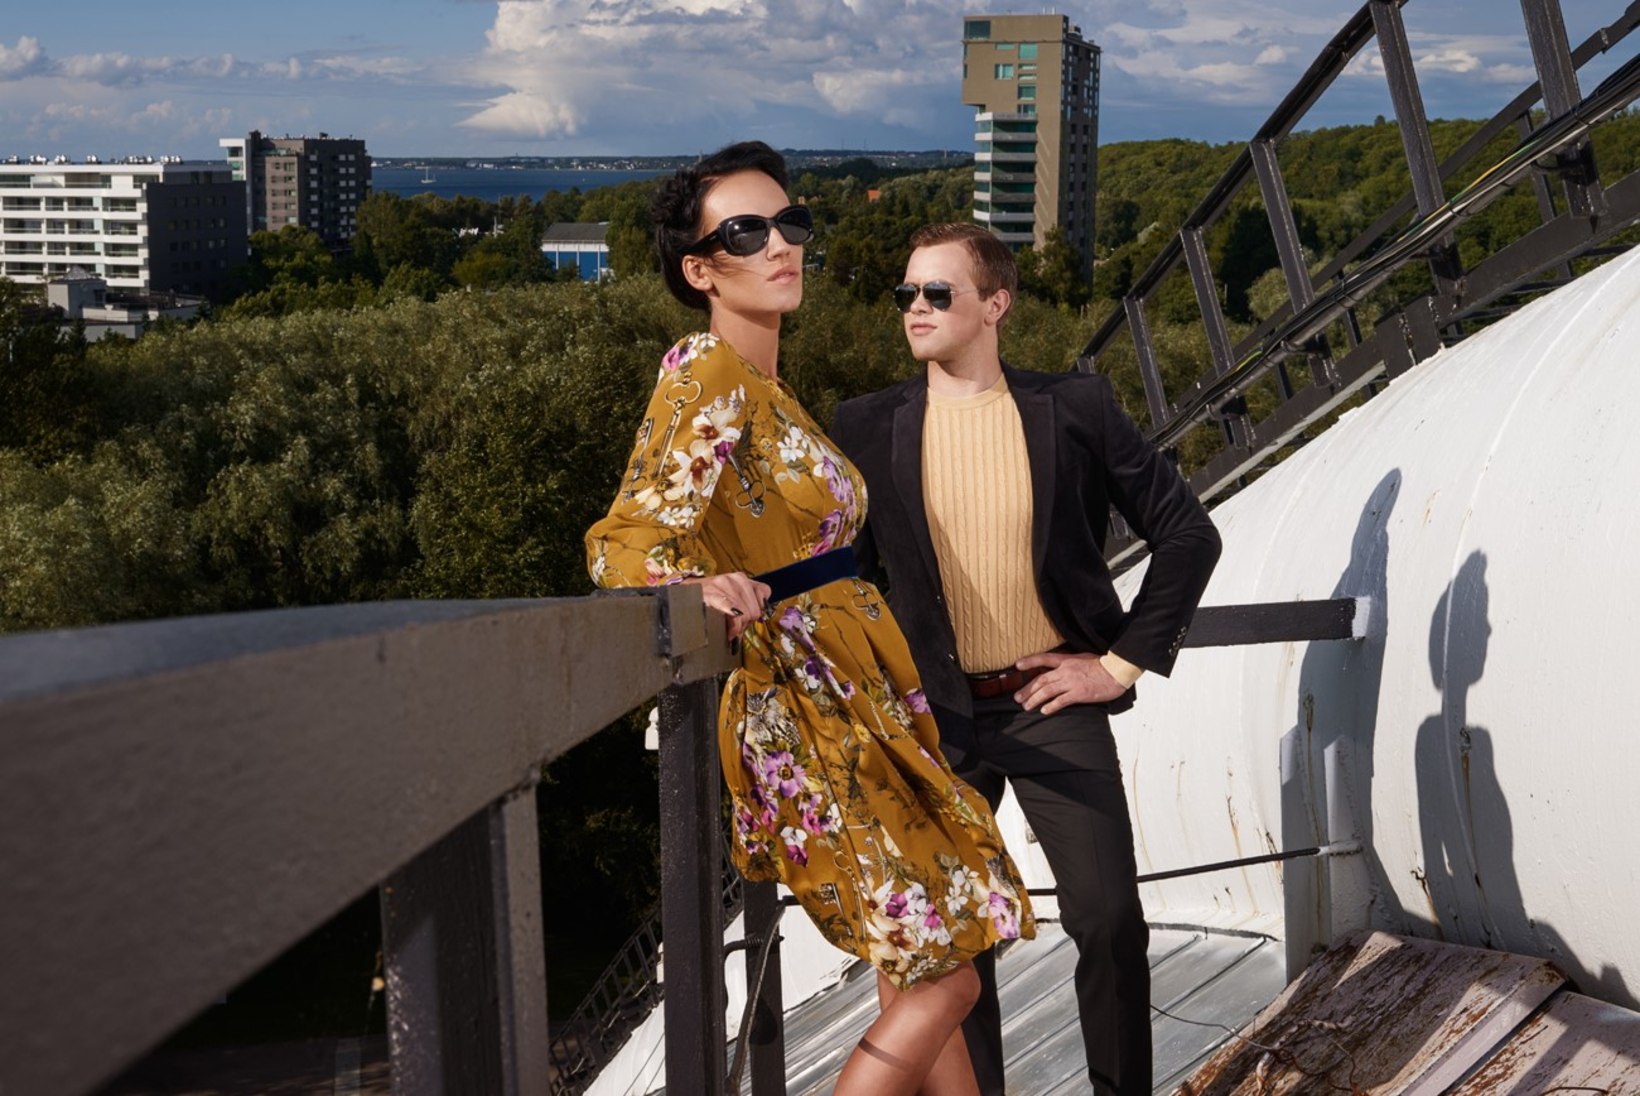 FOTOD SAATEST | "Eesti tippmodell": modell, kes ei leia sõpru